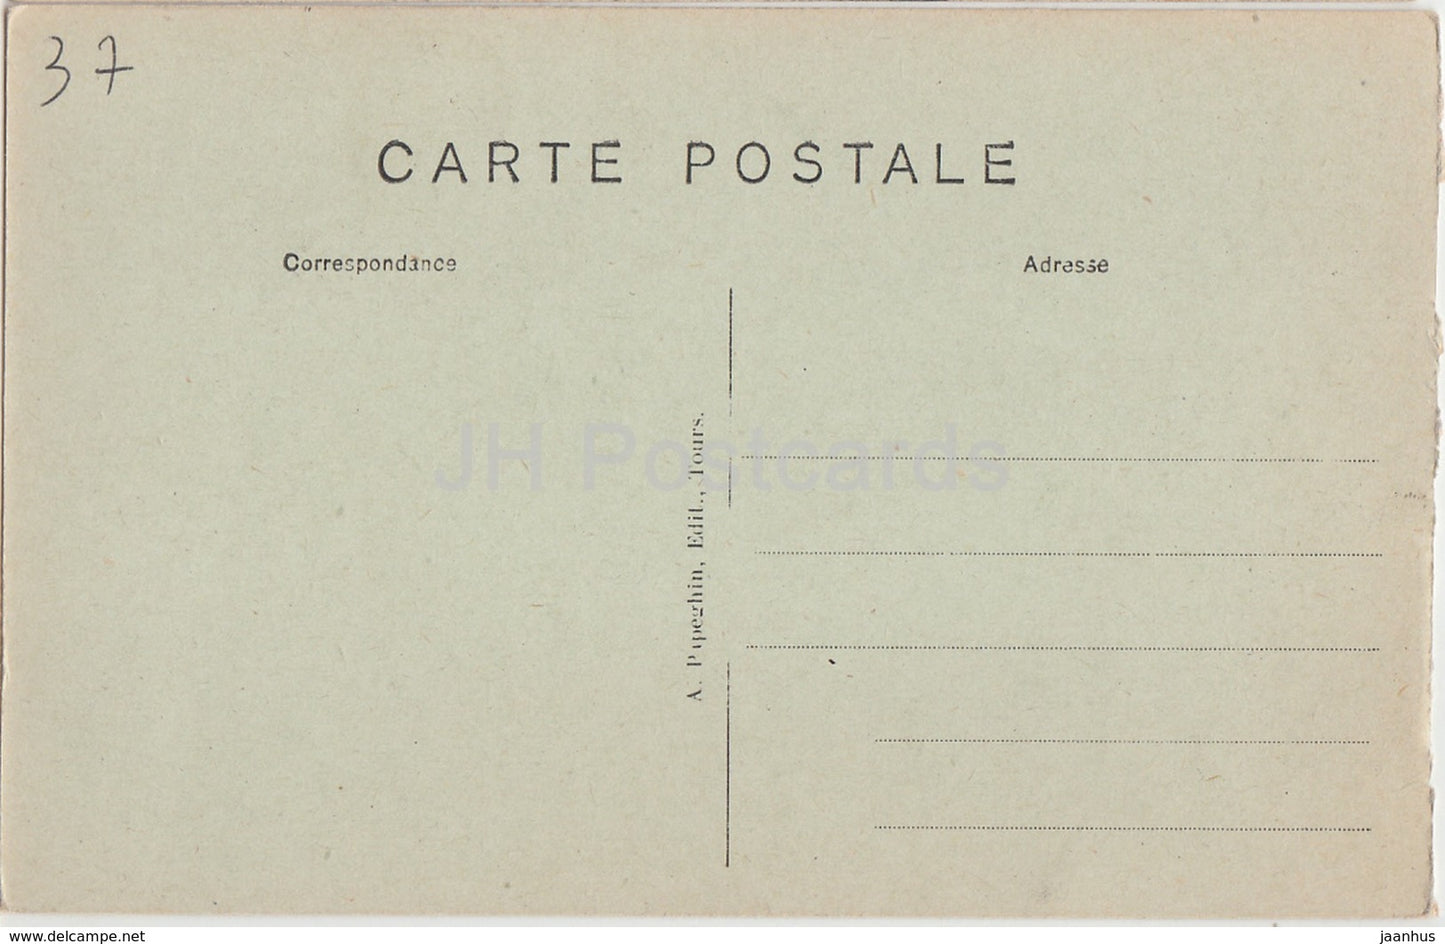 Amboise - Le Chateau - Gargouilles et Balcon - castle - 33 - old postcard - France - unused